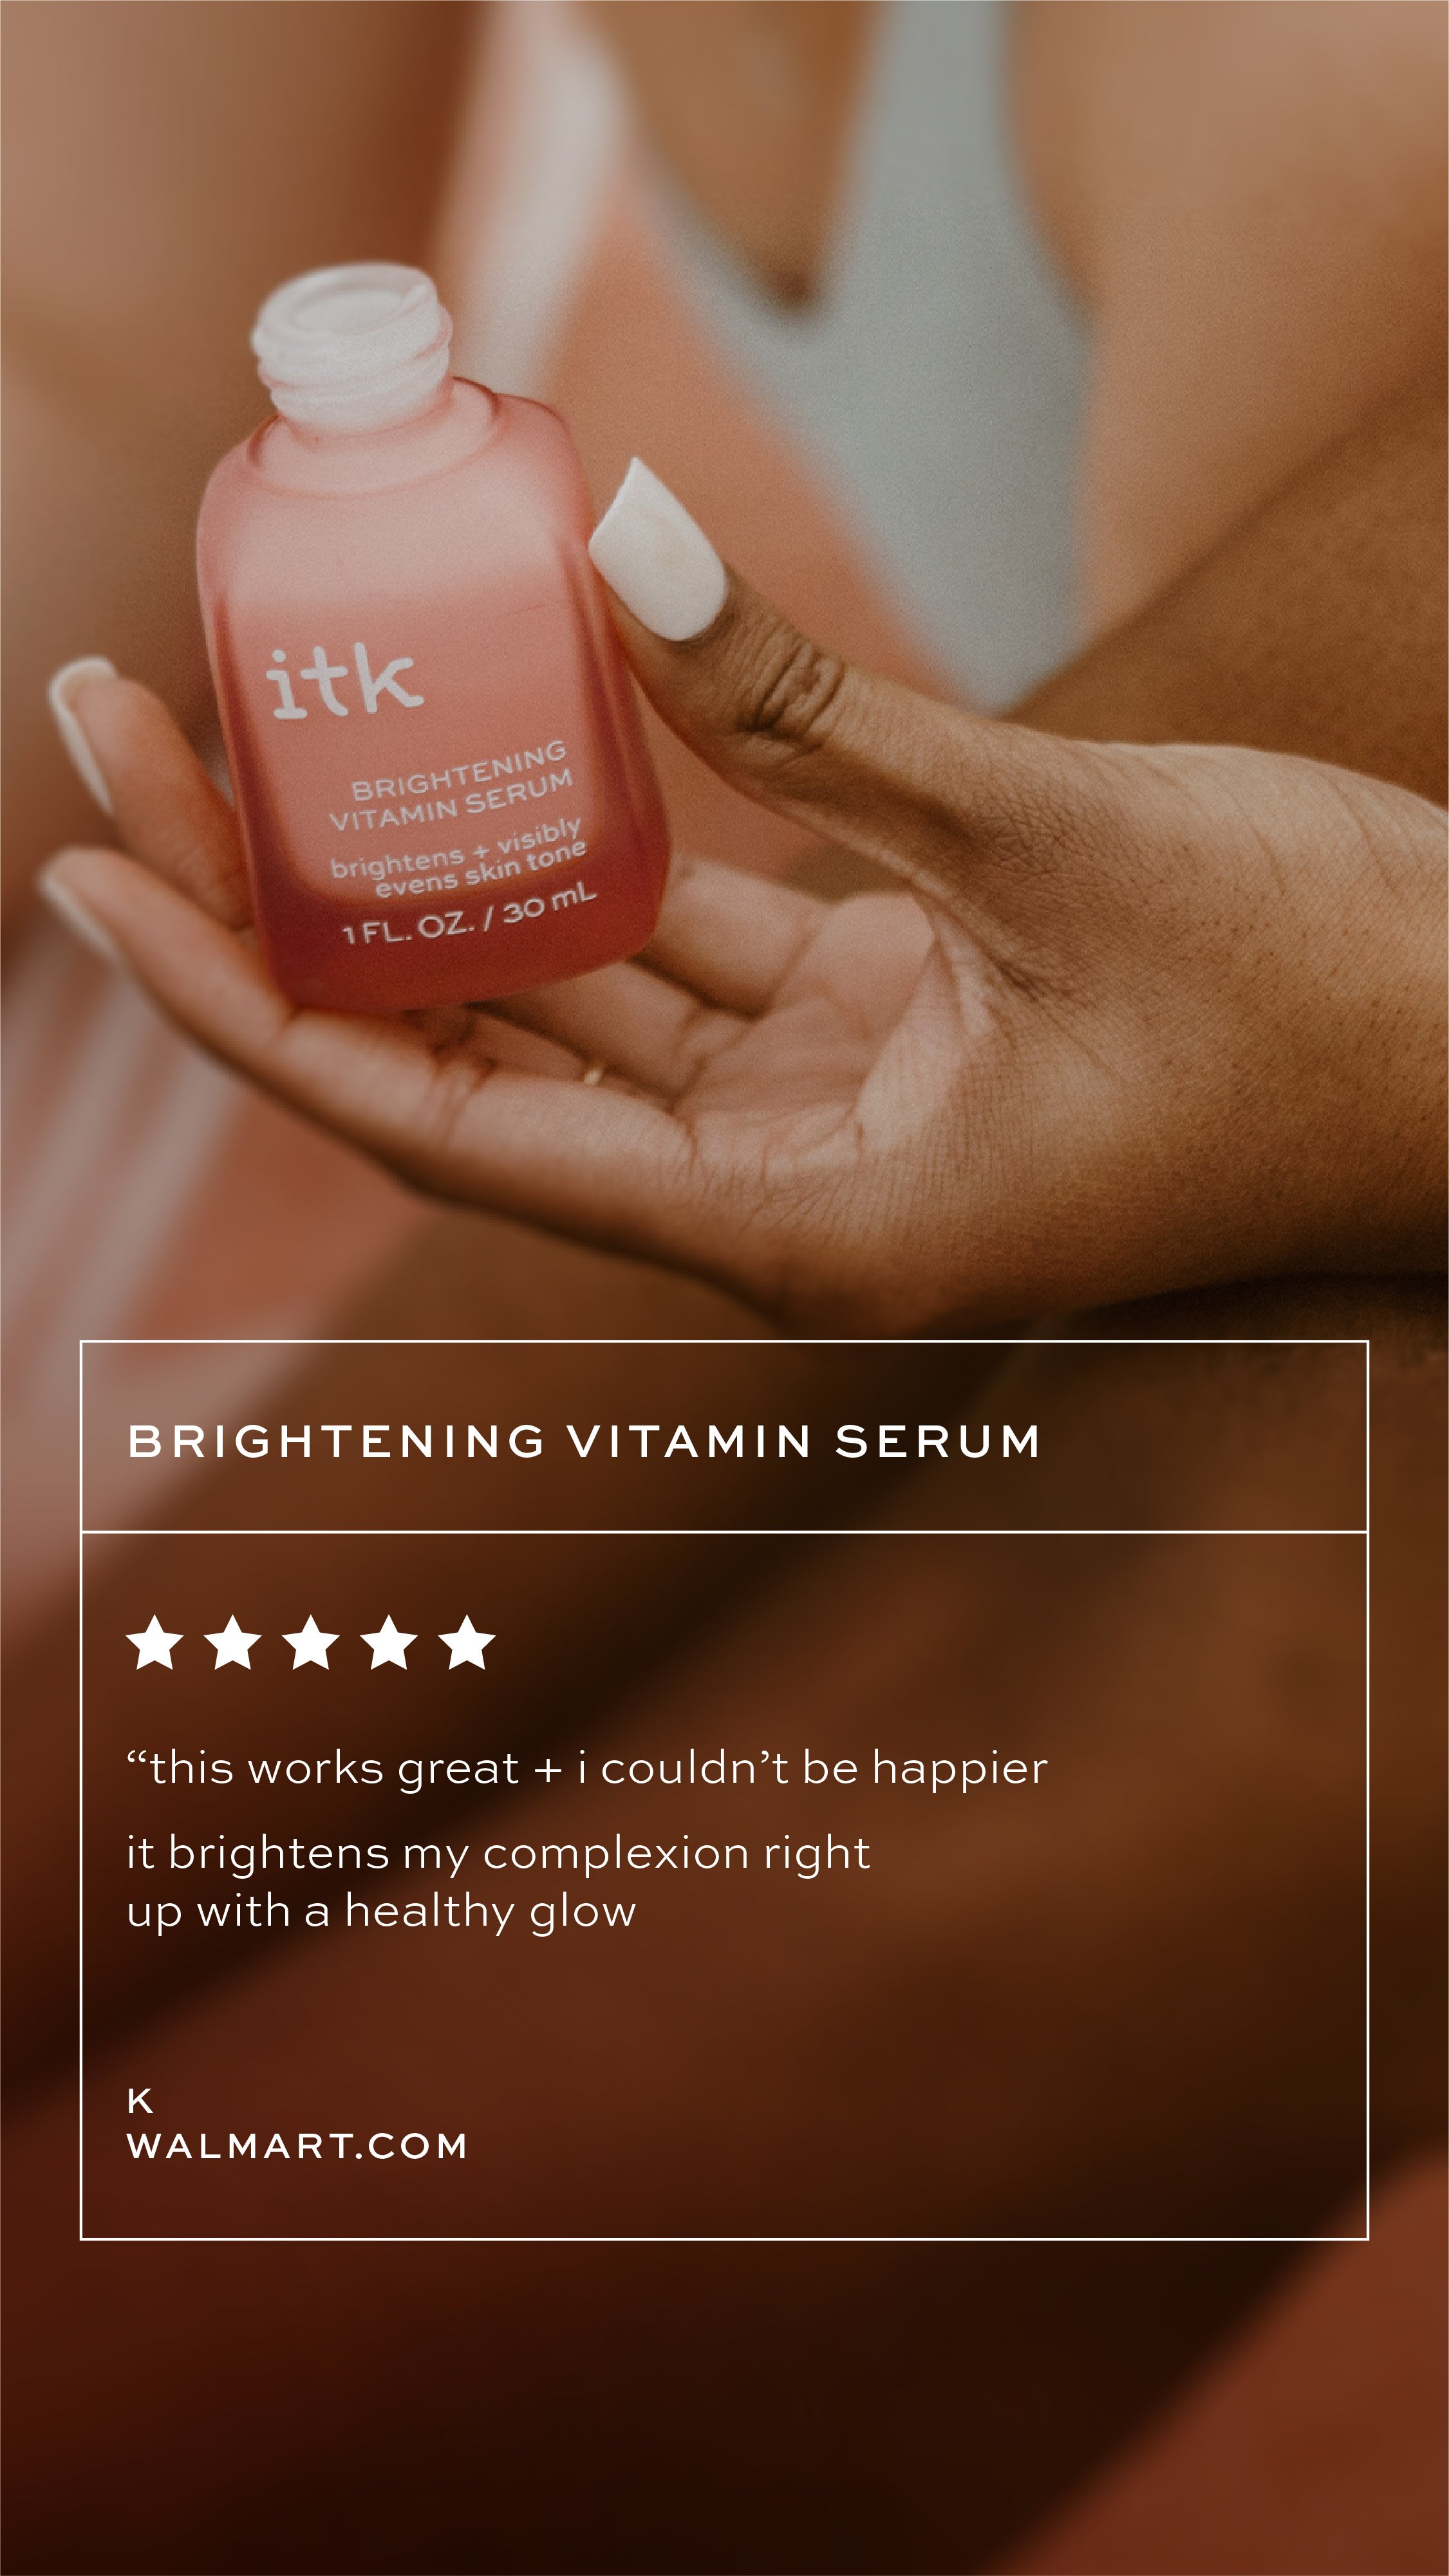 09_ITK_Social_Review-Template_Brightening-Vitamin-C-03.jpg